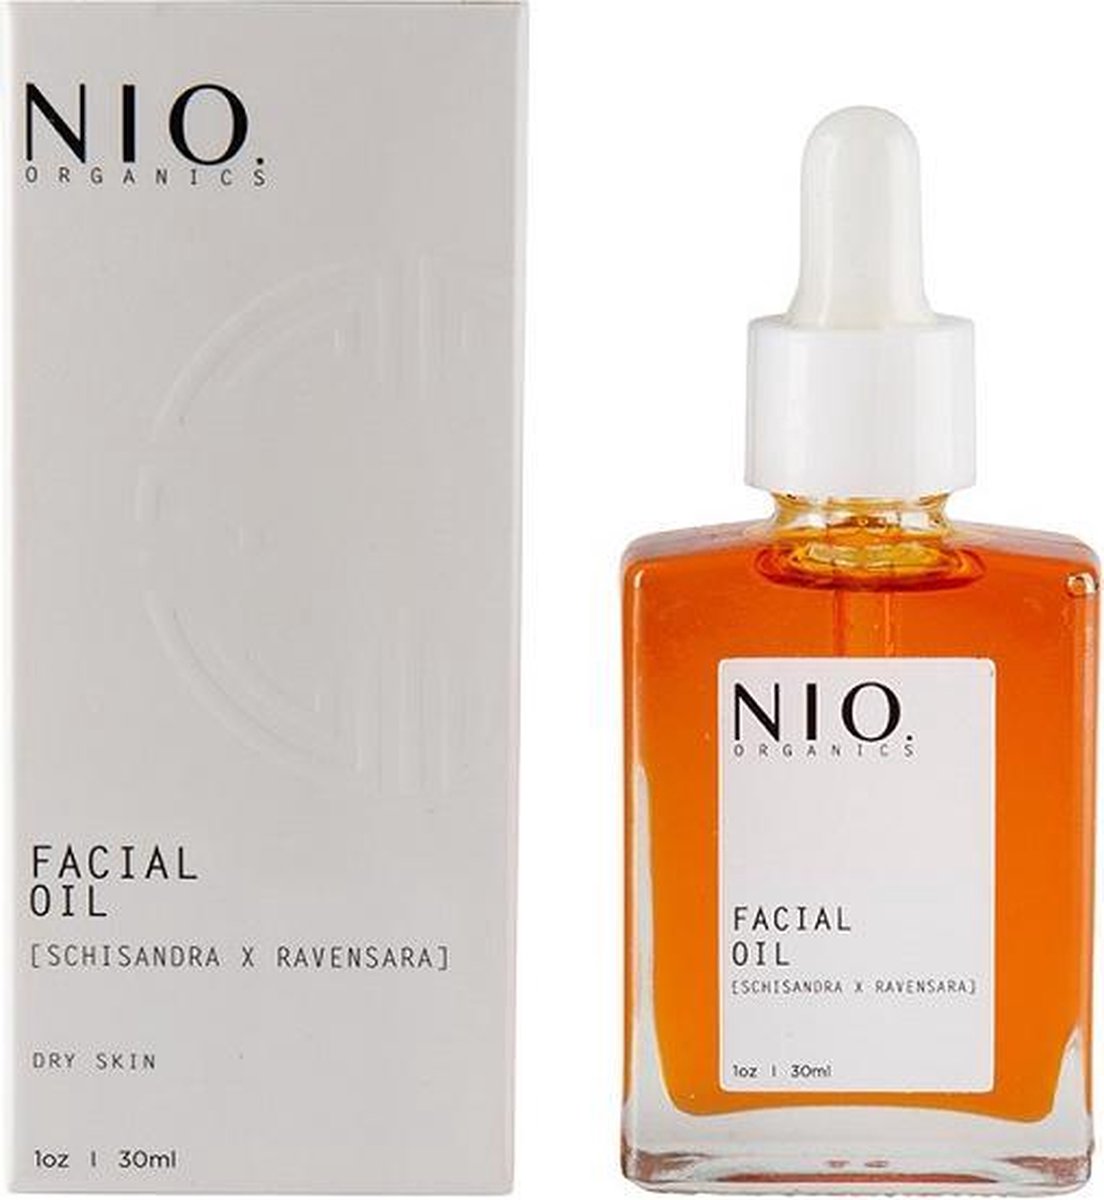 Nio organics - 100% natuurlijke en biologische huidverzorging - Facial Oil [Schisandra X Ravensara] (30 ml)